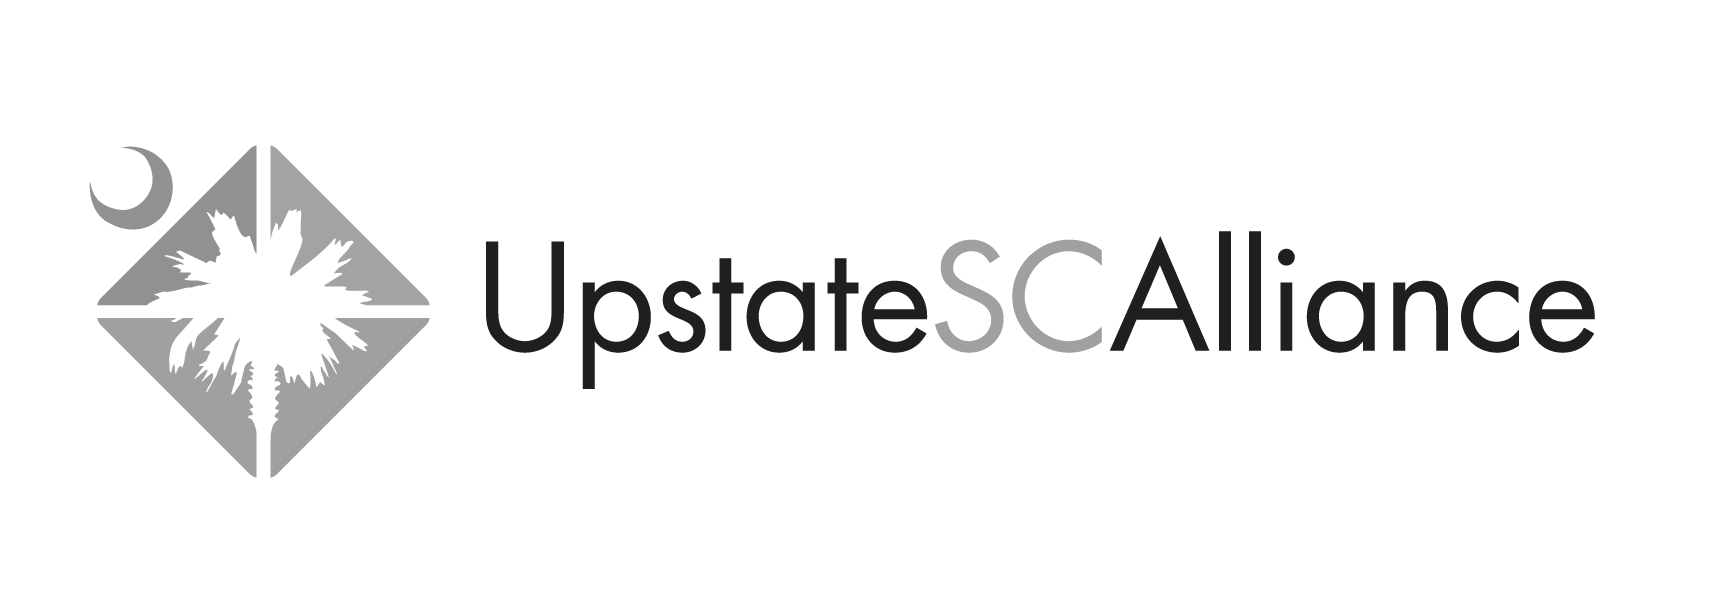 upstate sc alliance